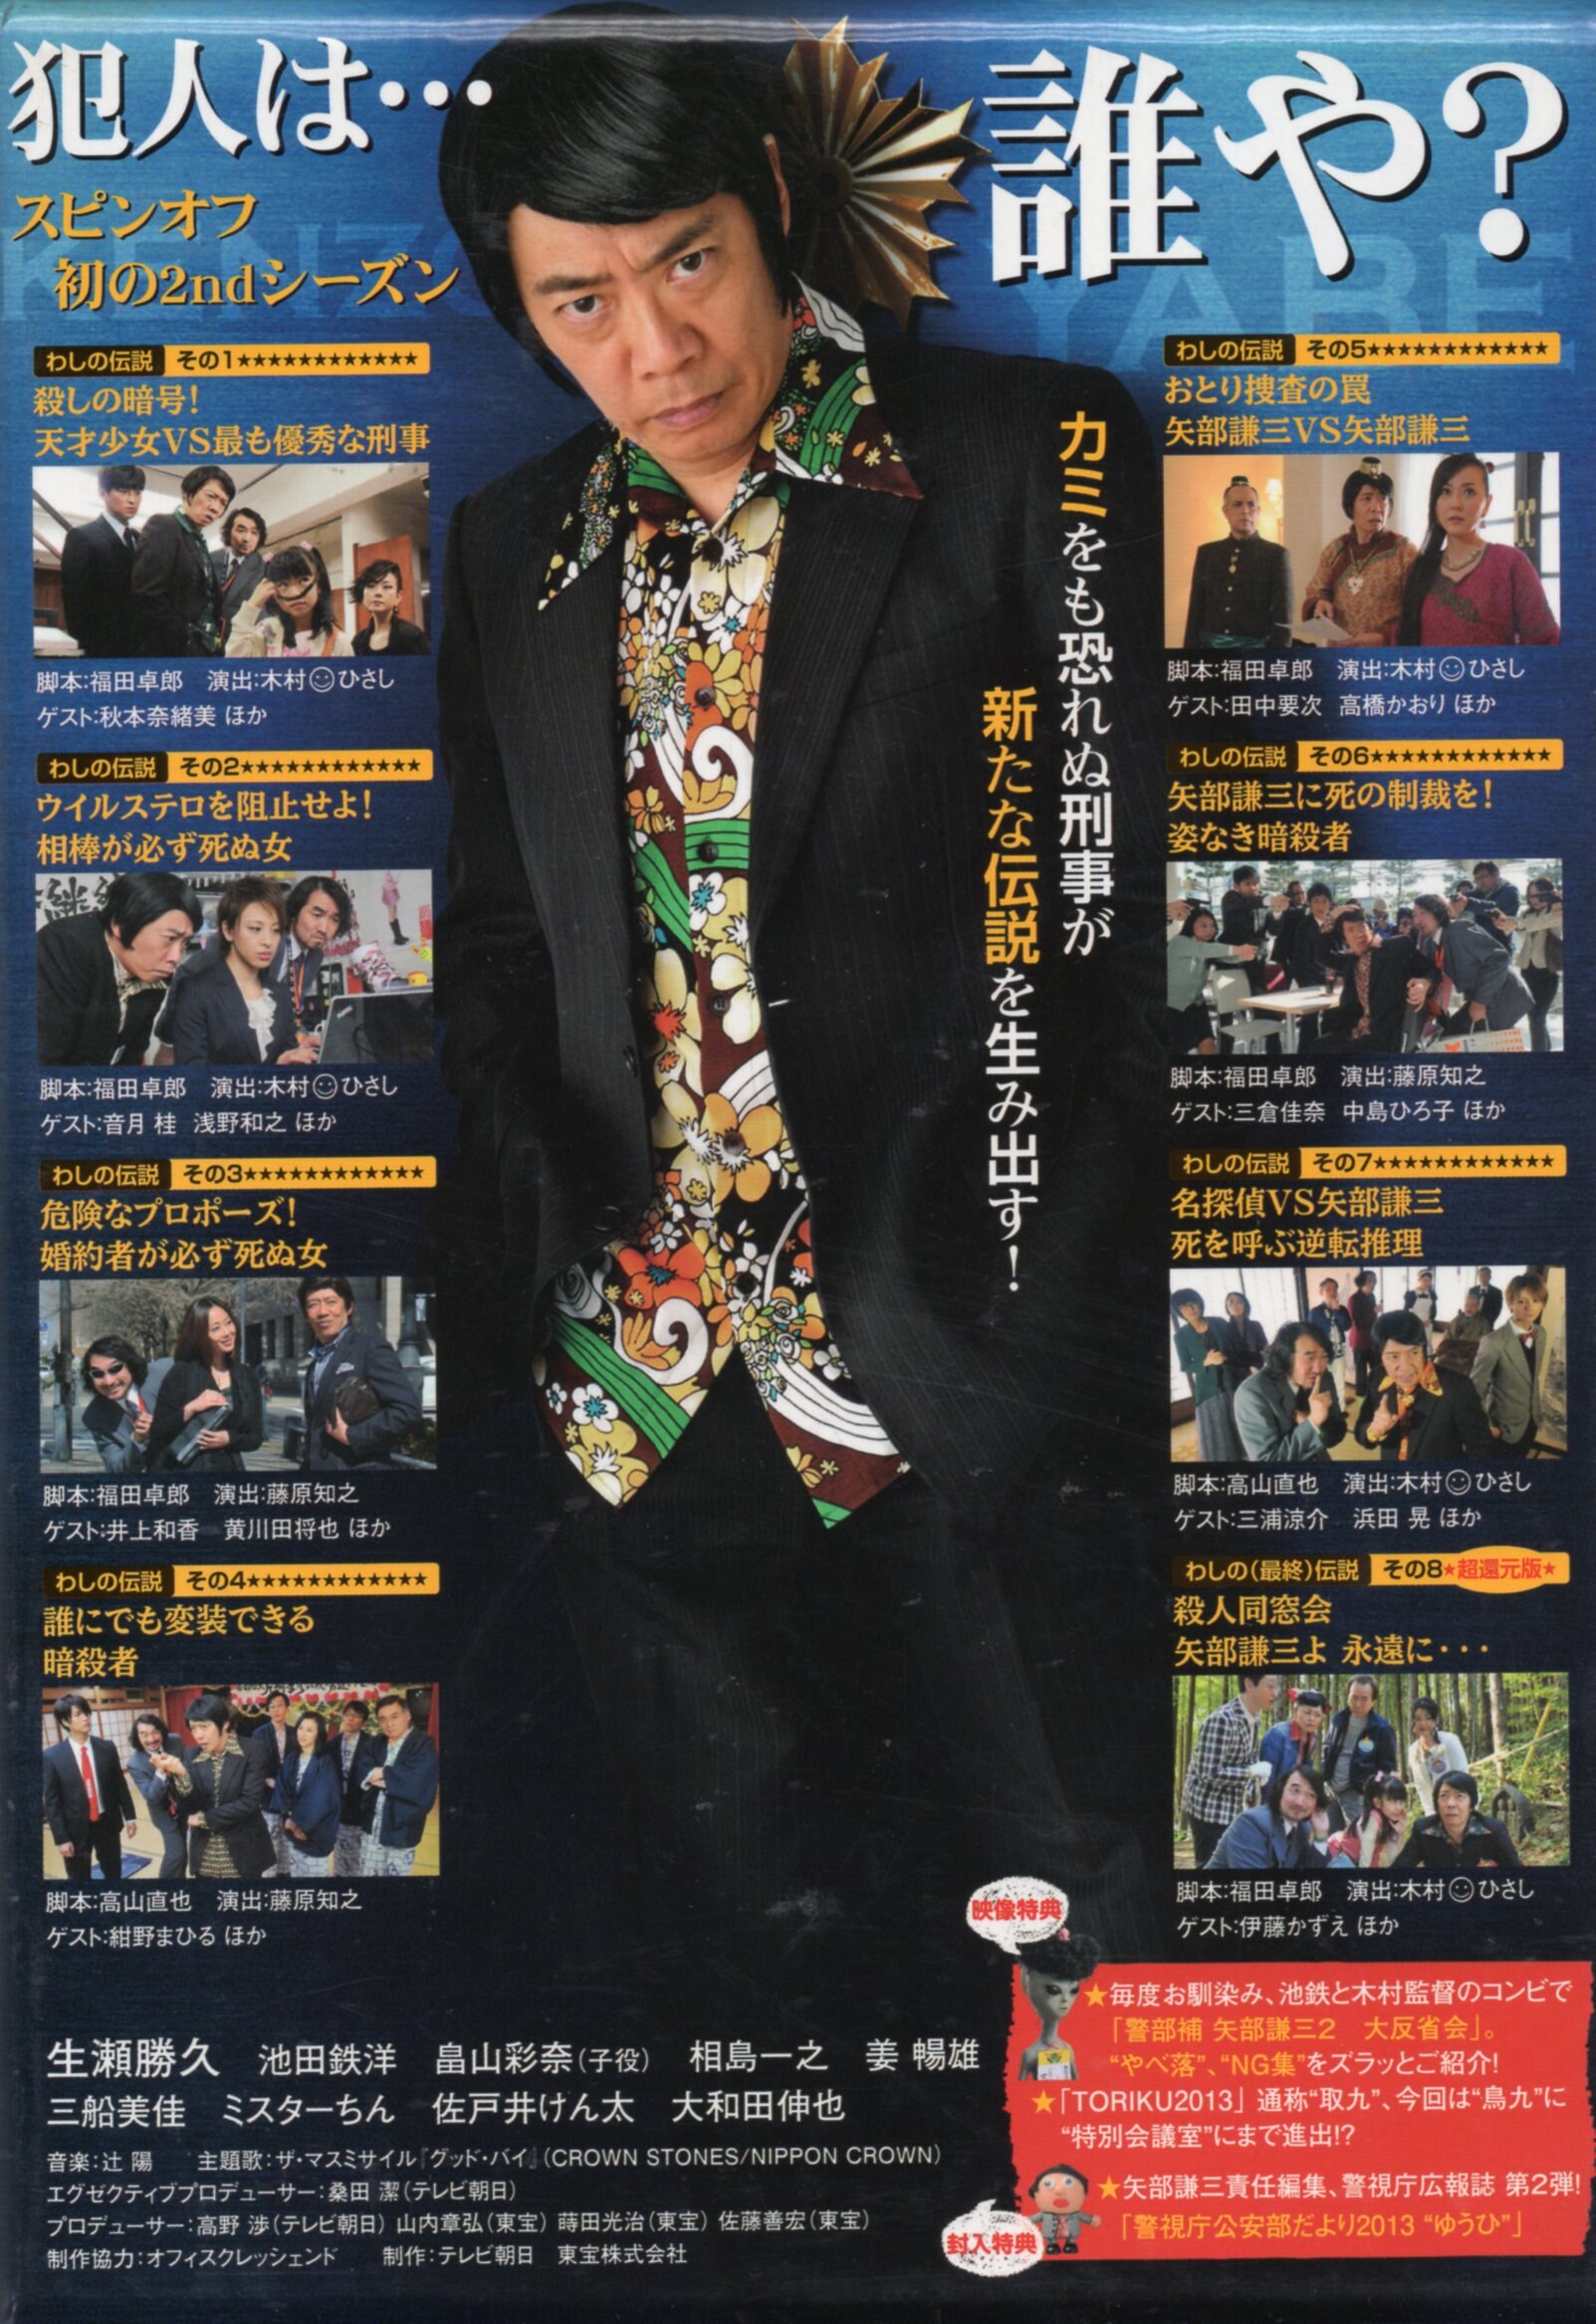 Drama Dvd Katsuhisa Namase Lieutenant Kenzo Yabe 2 Dvd Box Mandarake Online Shop